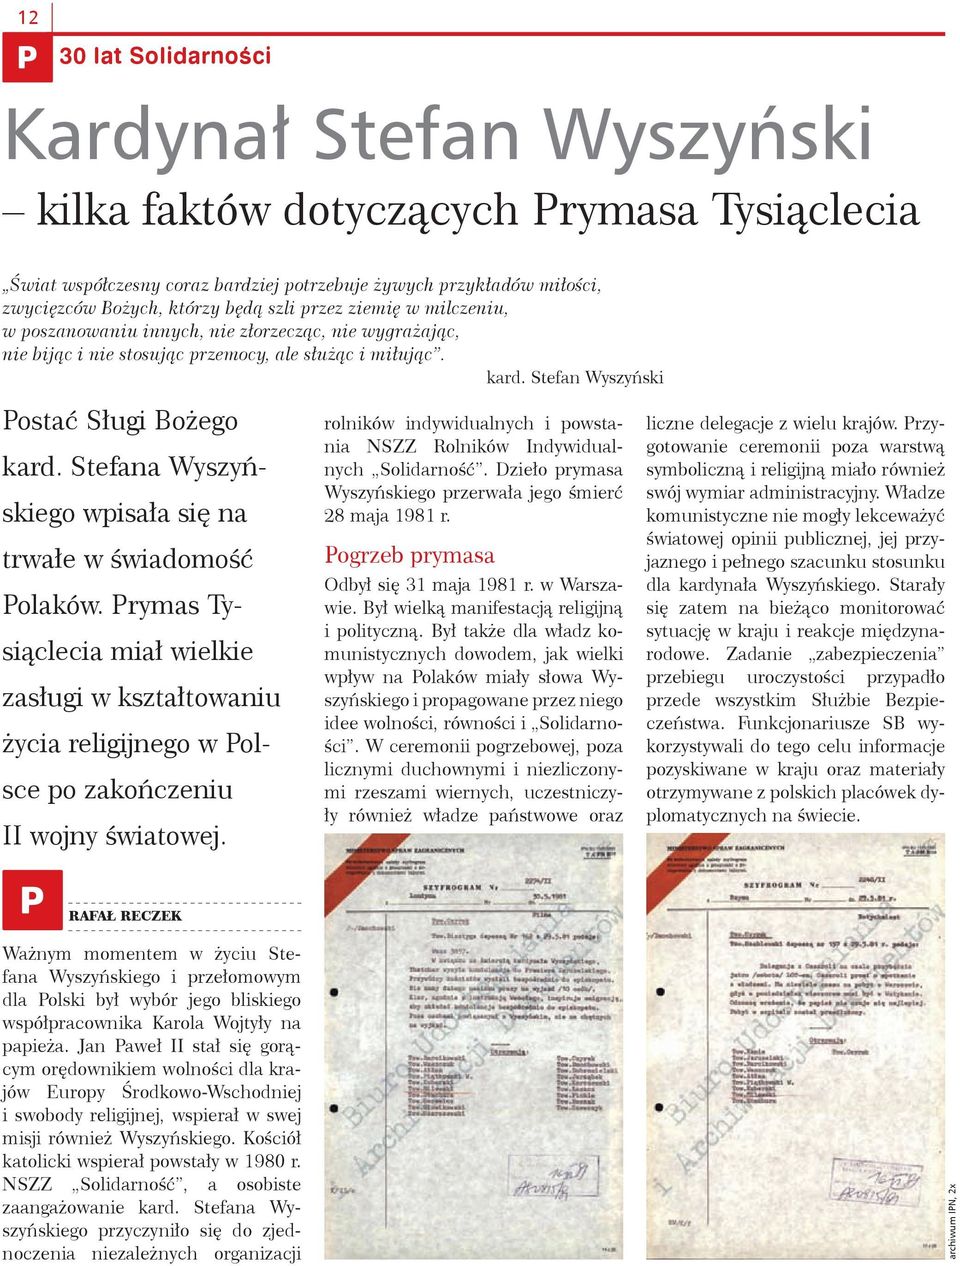 Stefana Wyszyńskiego wpisała się na trwałe w świadomość Polaków. Prymas Tysiąclecia miał wielkie zasługi w kształtowaniu życia religijnego w Polsce po zakończeniu II wojny światowej.